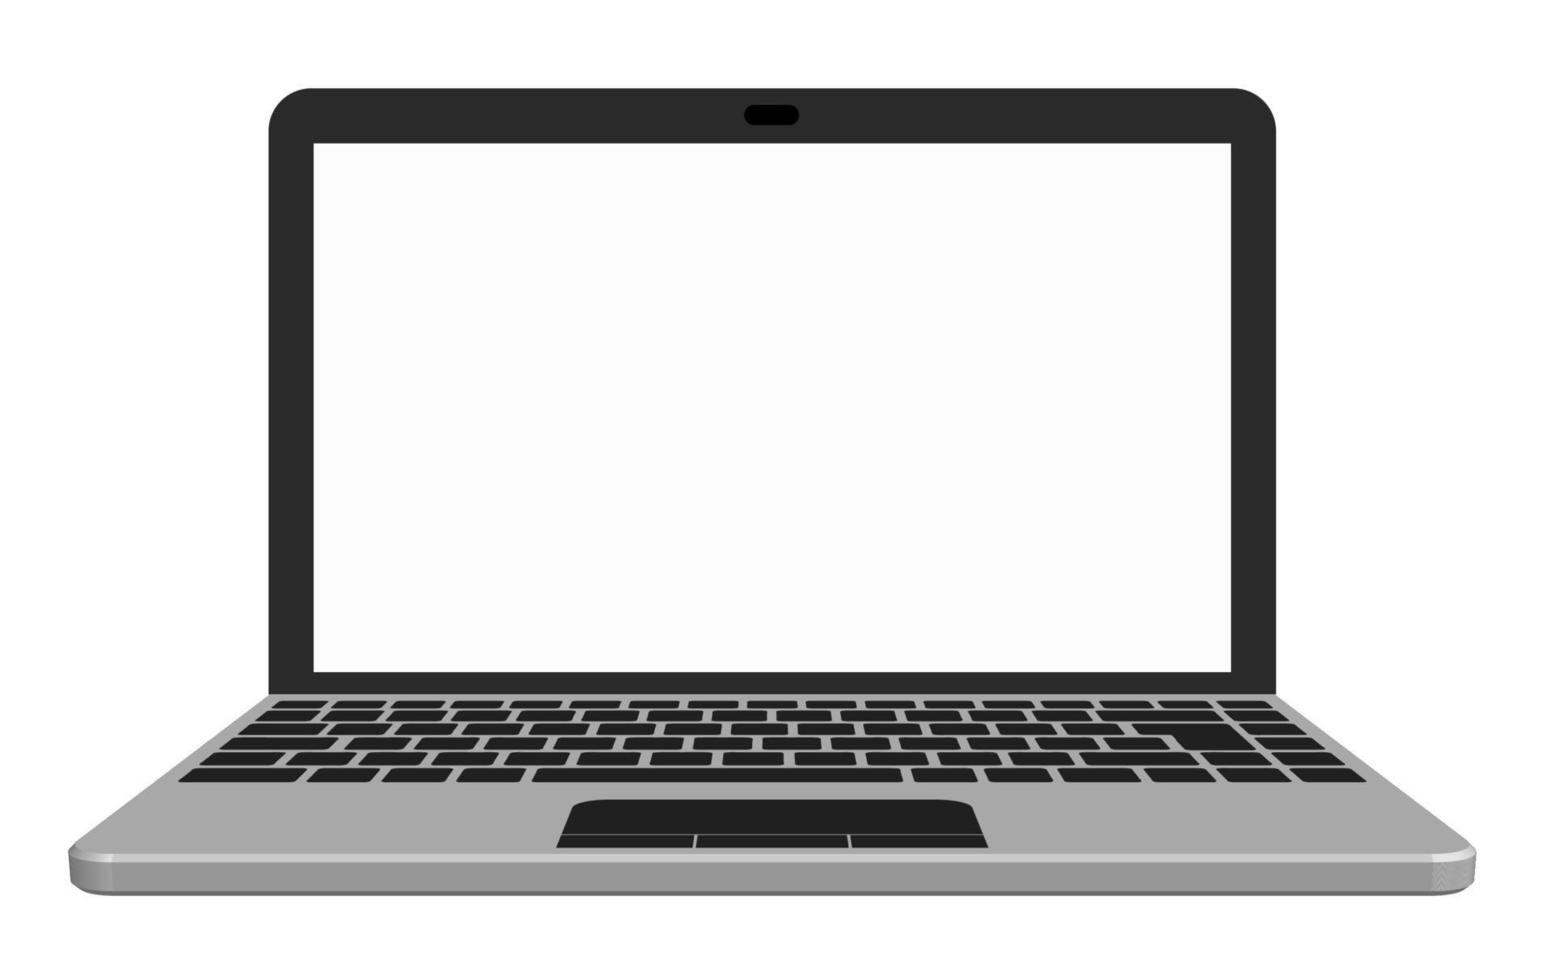 Silberner Laptop mit leerem Bildschirm. Schablone. isometrischer Vektor auf weißem Hintergrund